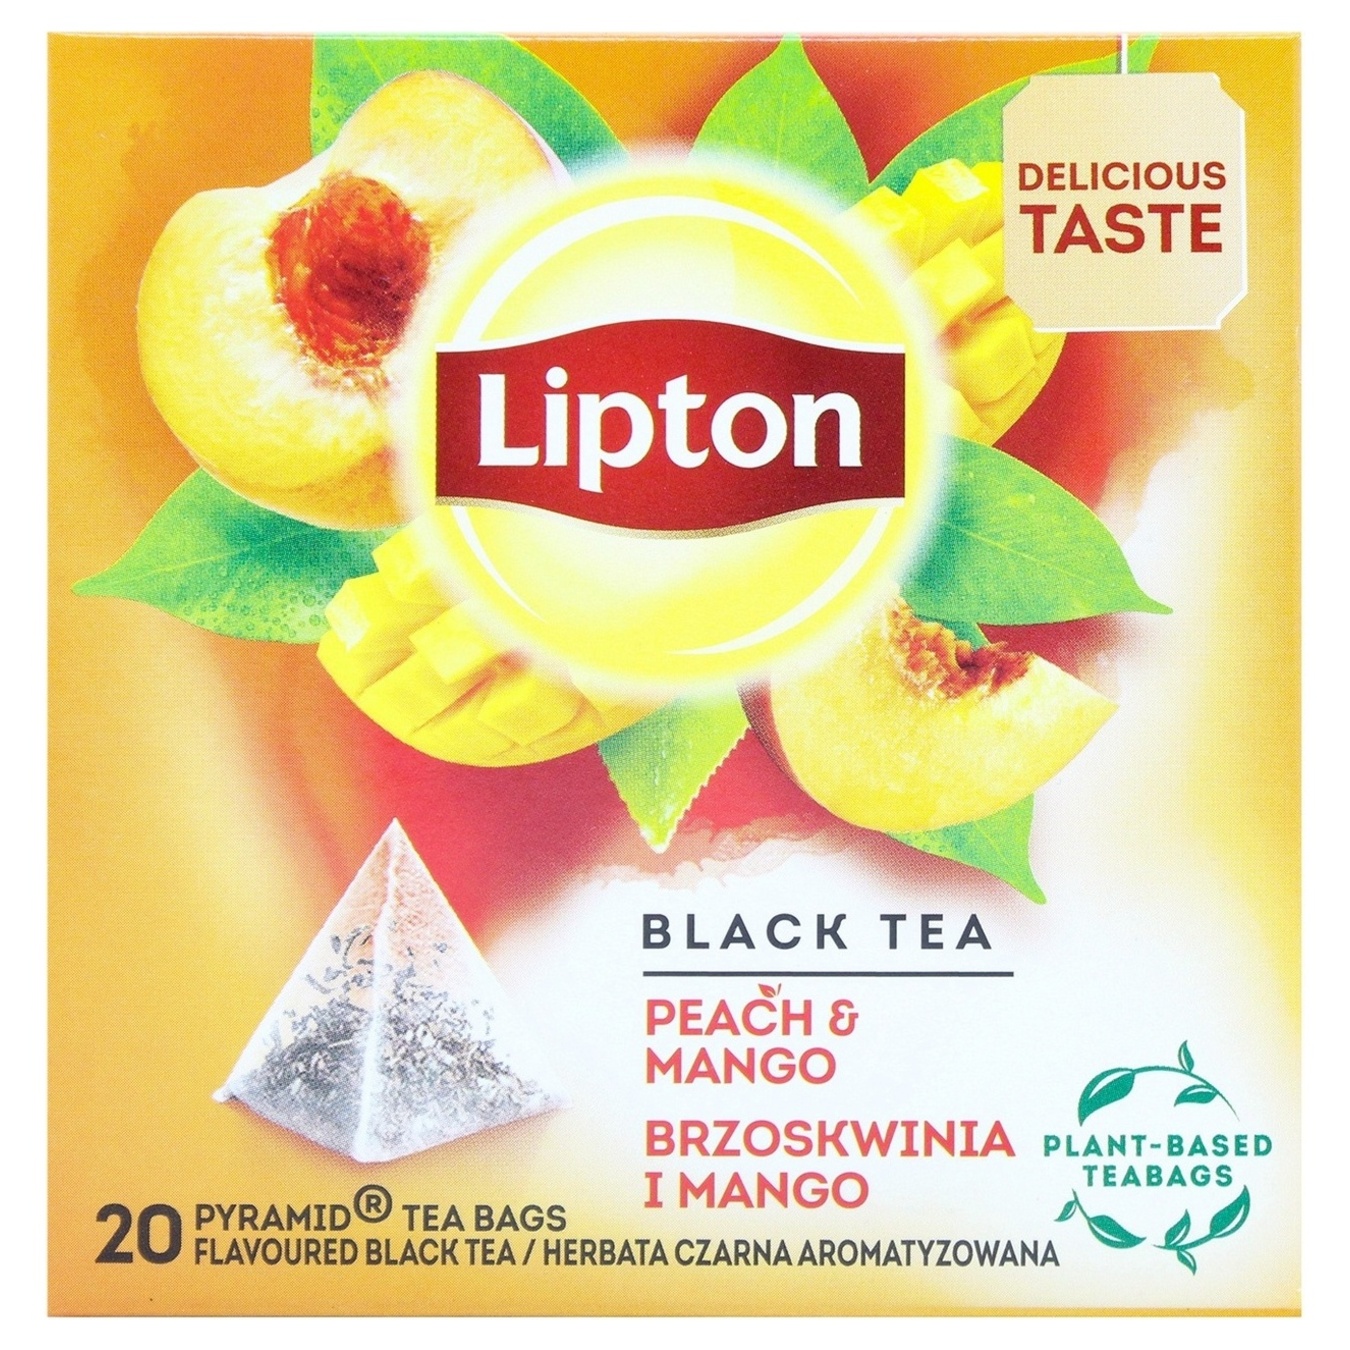 Black tea Lipton Peach Mango flavored with peach and mango 20 pcs